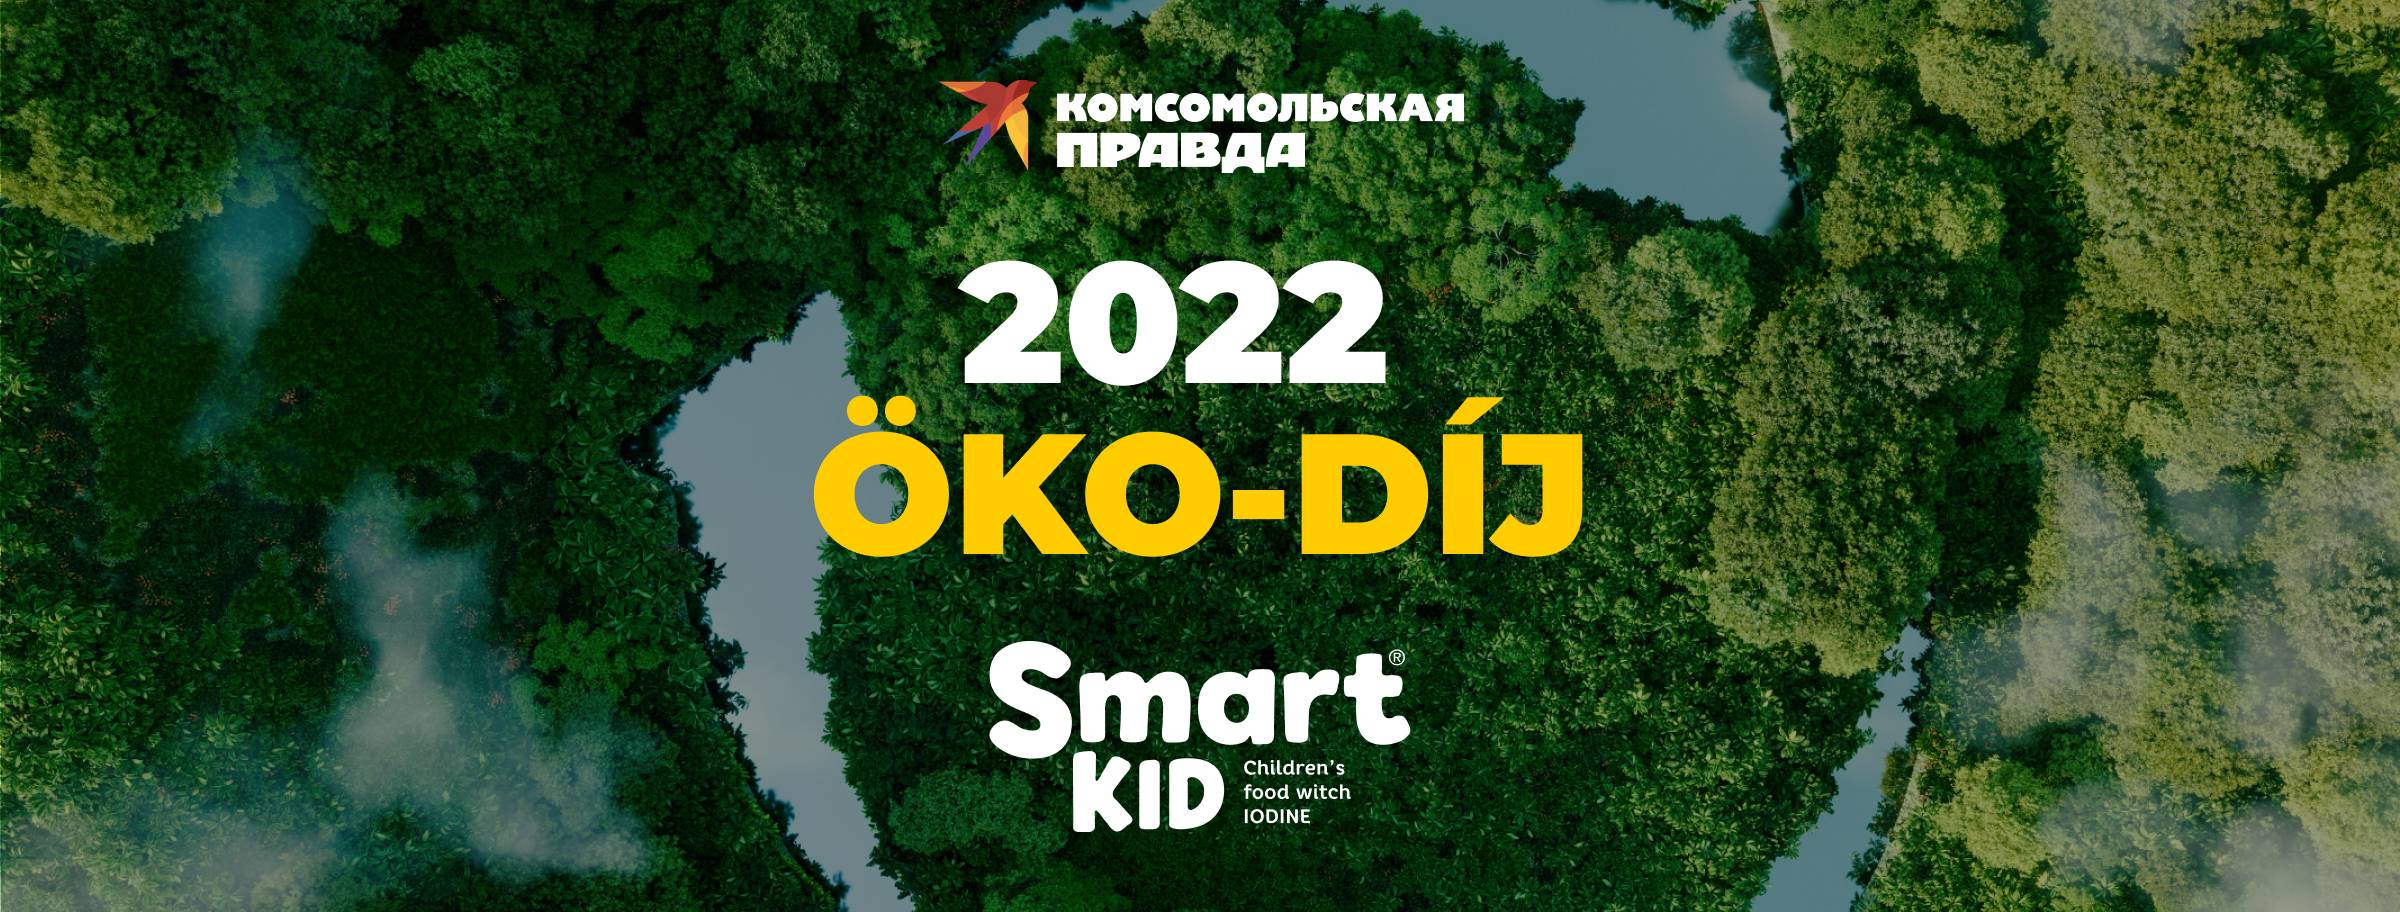 "Komsomolskaya Pravda"-2022 öko-díj: Az "Okos gyerek" egyszerre 2 jelölésben nyert!